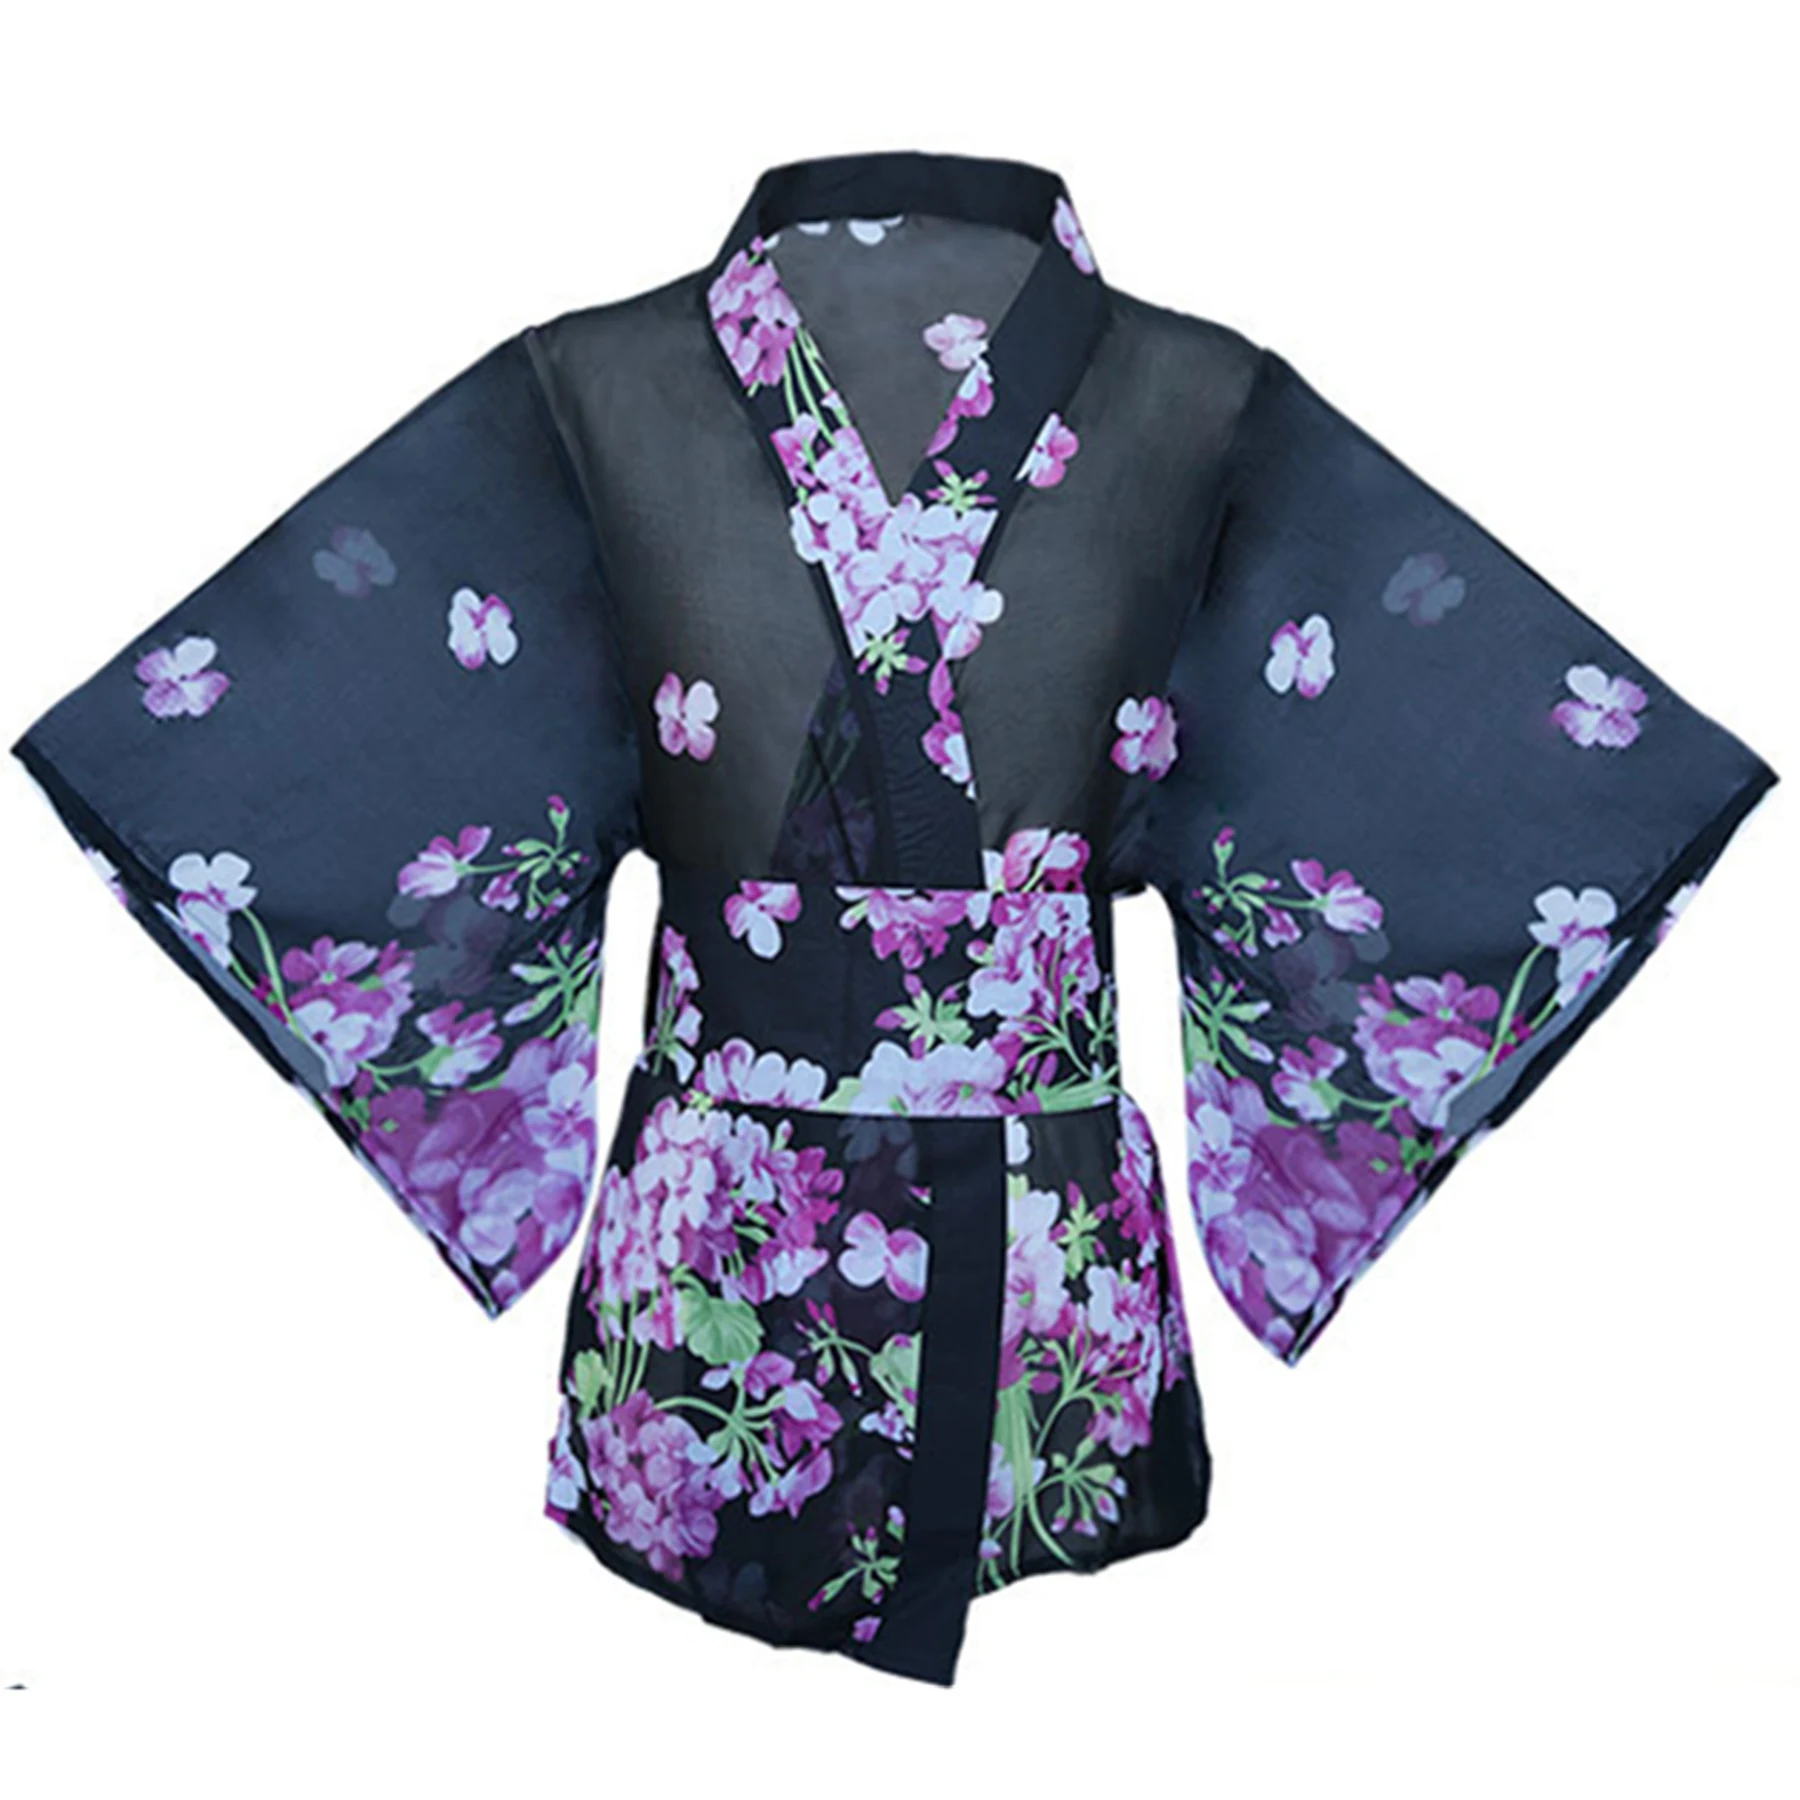 

Пикантное нижнее белье, одежда с вырезами, японское кимоно, женская форма, Соблазнительный комплект, костюм для студентов и представлений, женское платье